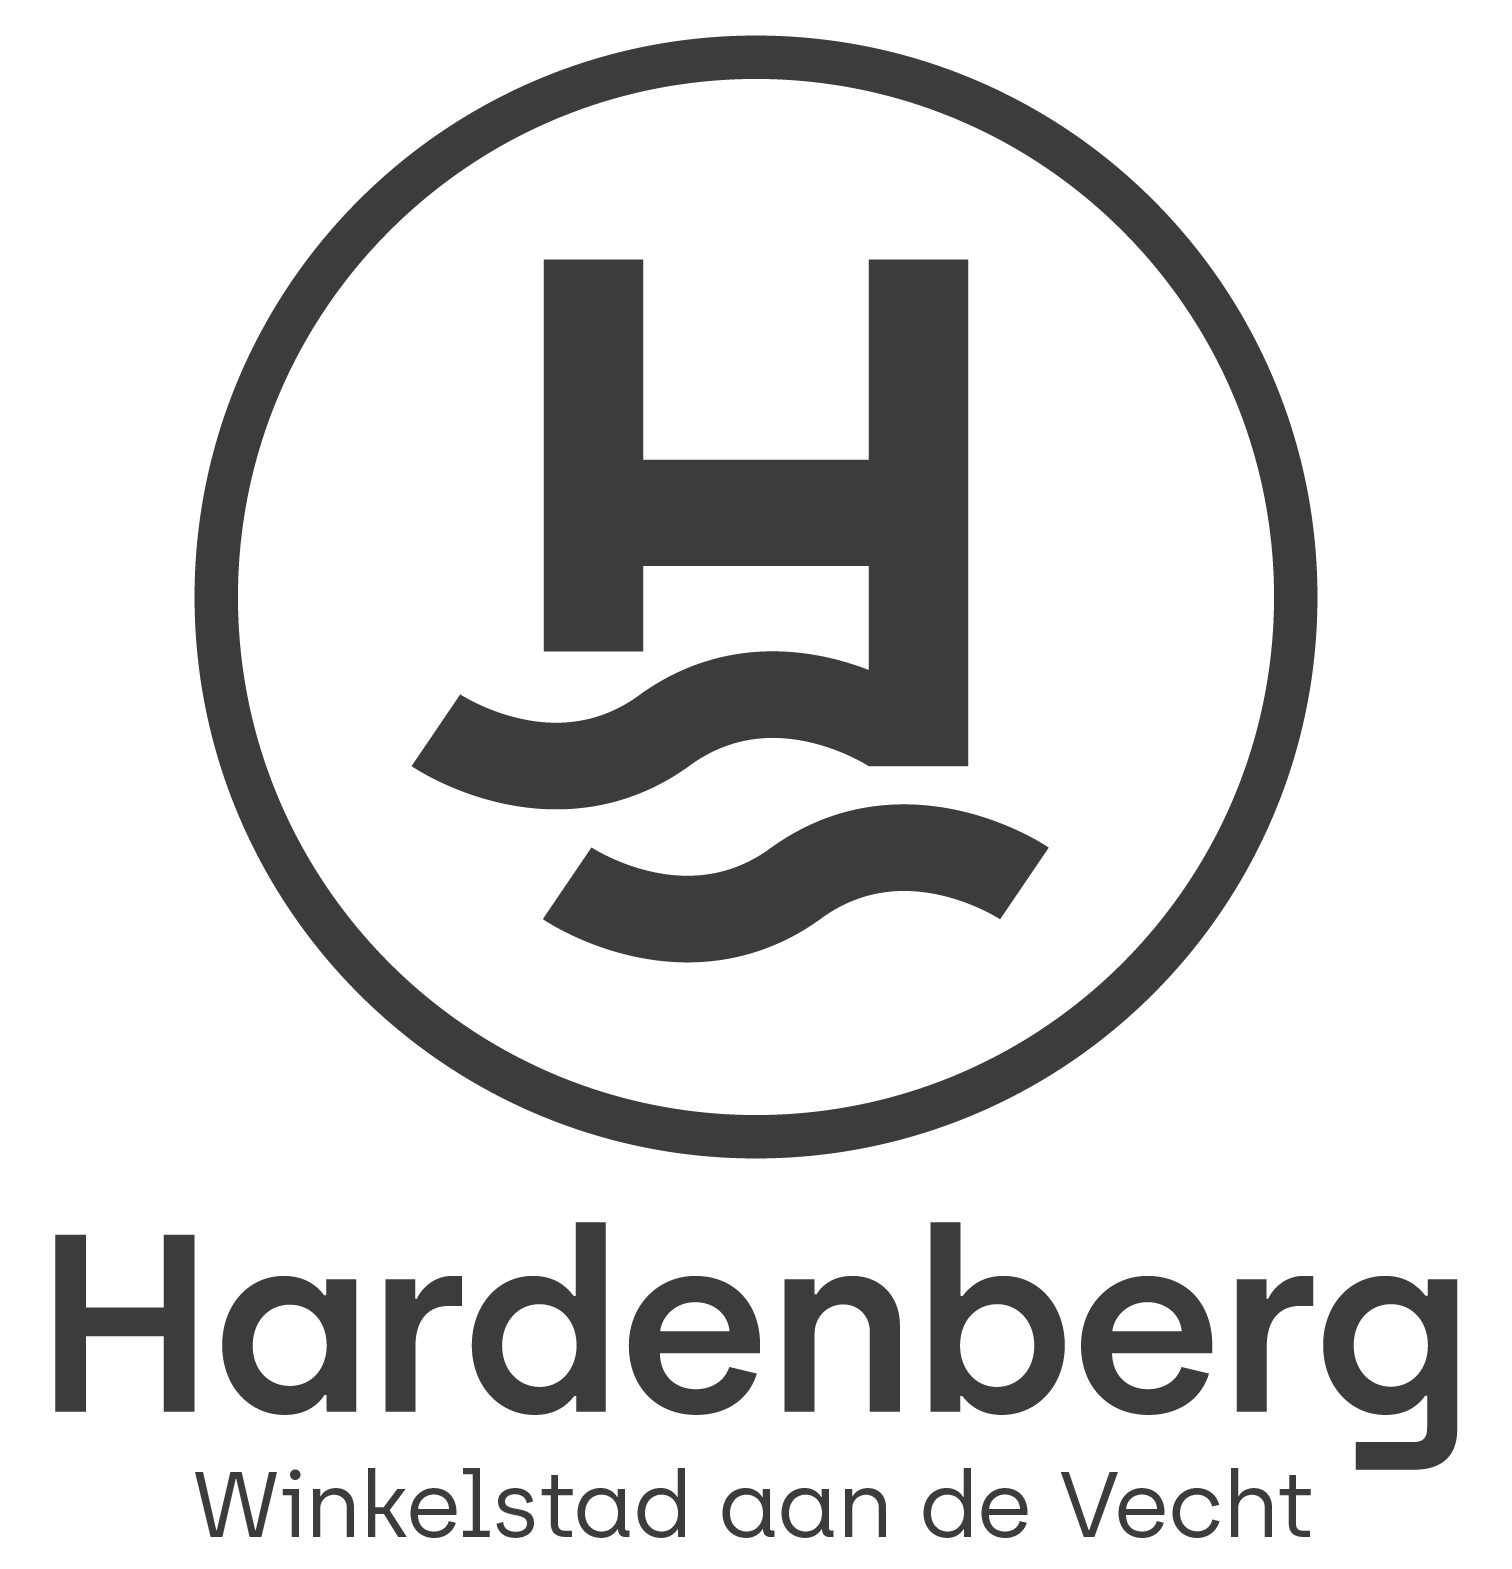 Toko VTY nieuw in Winkelstad Hardenberg! - Winkelstad Hardenberg